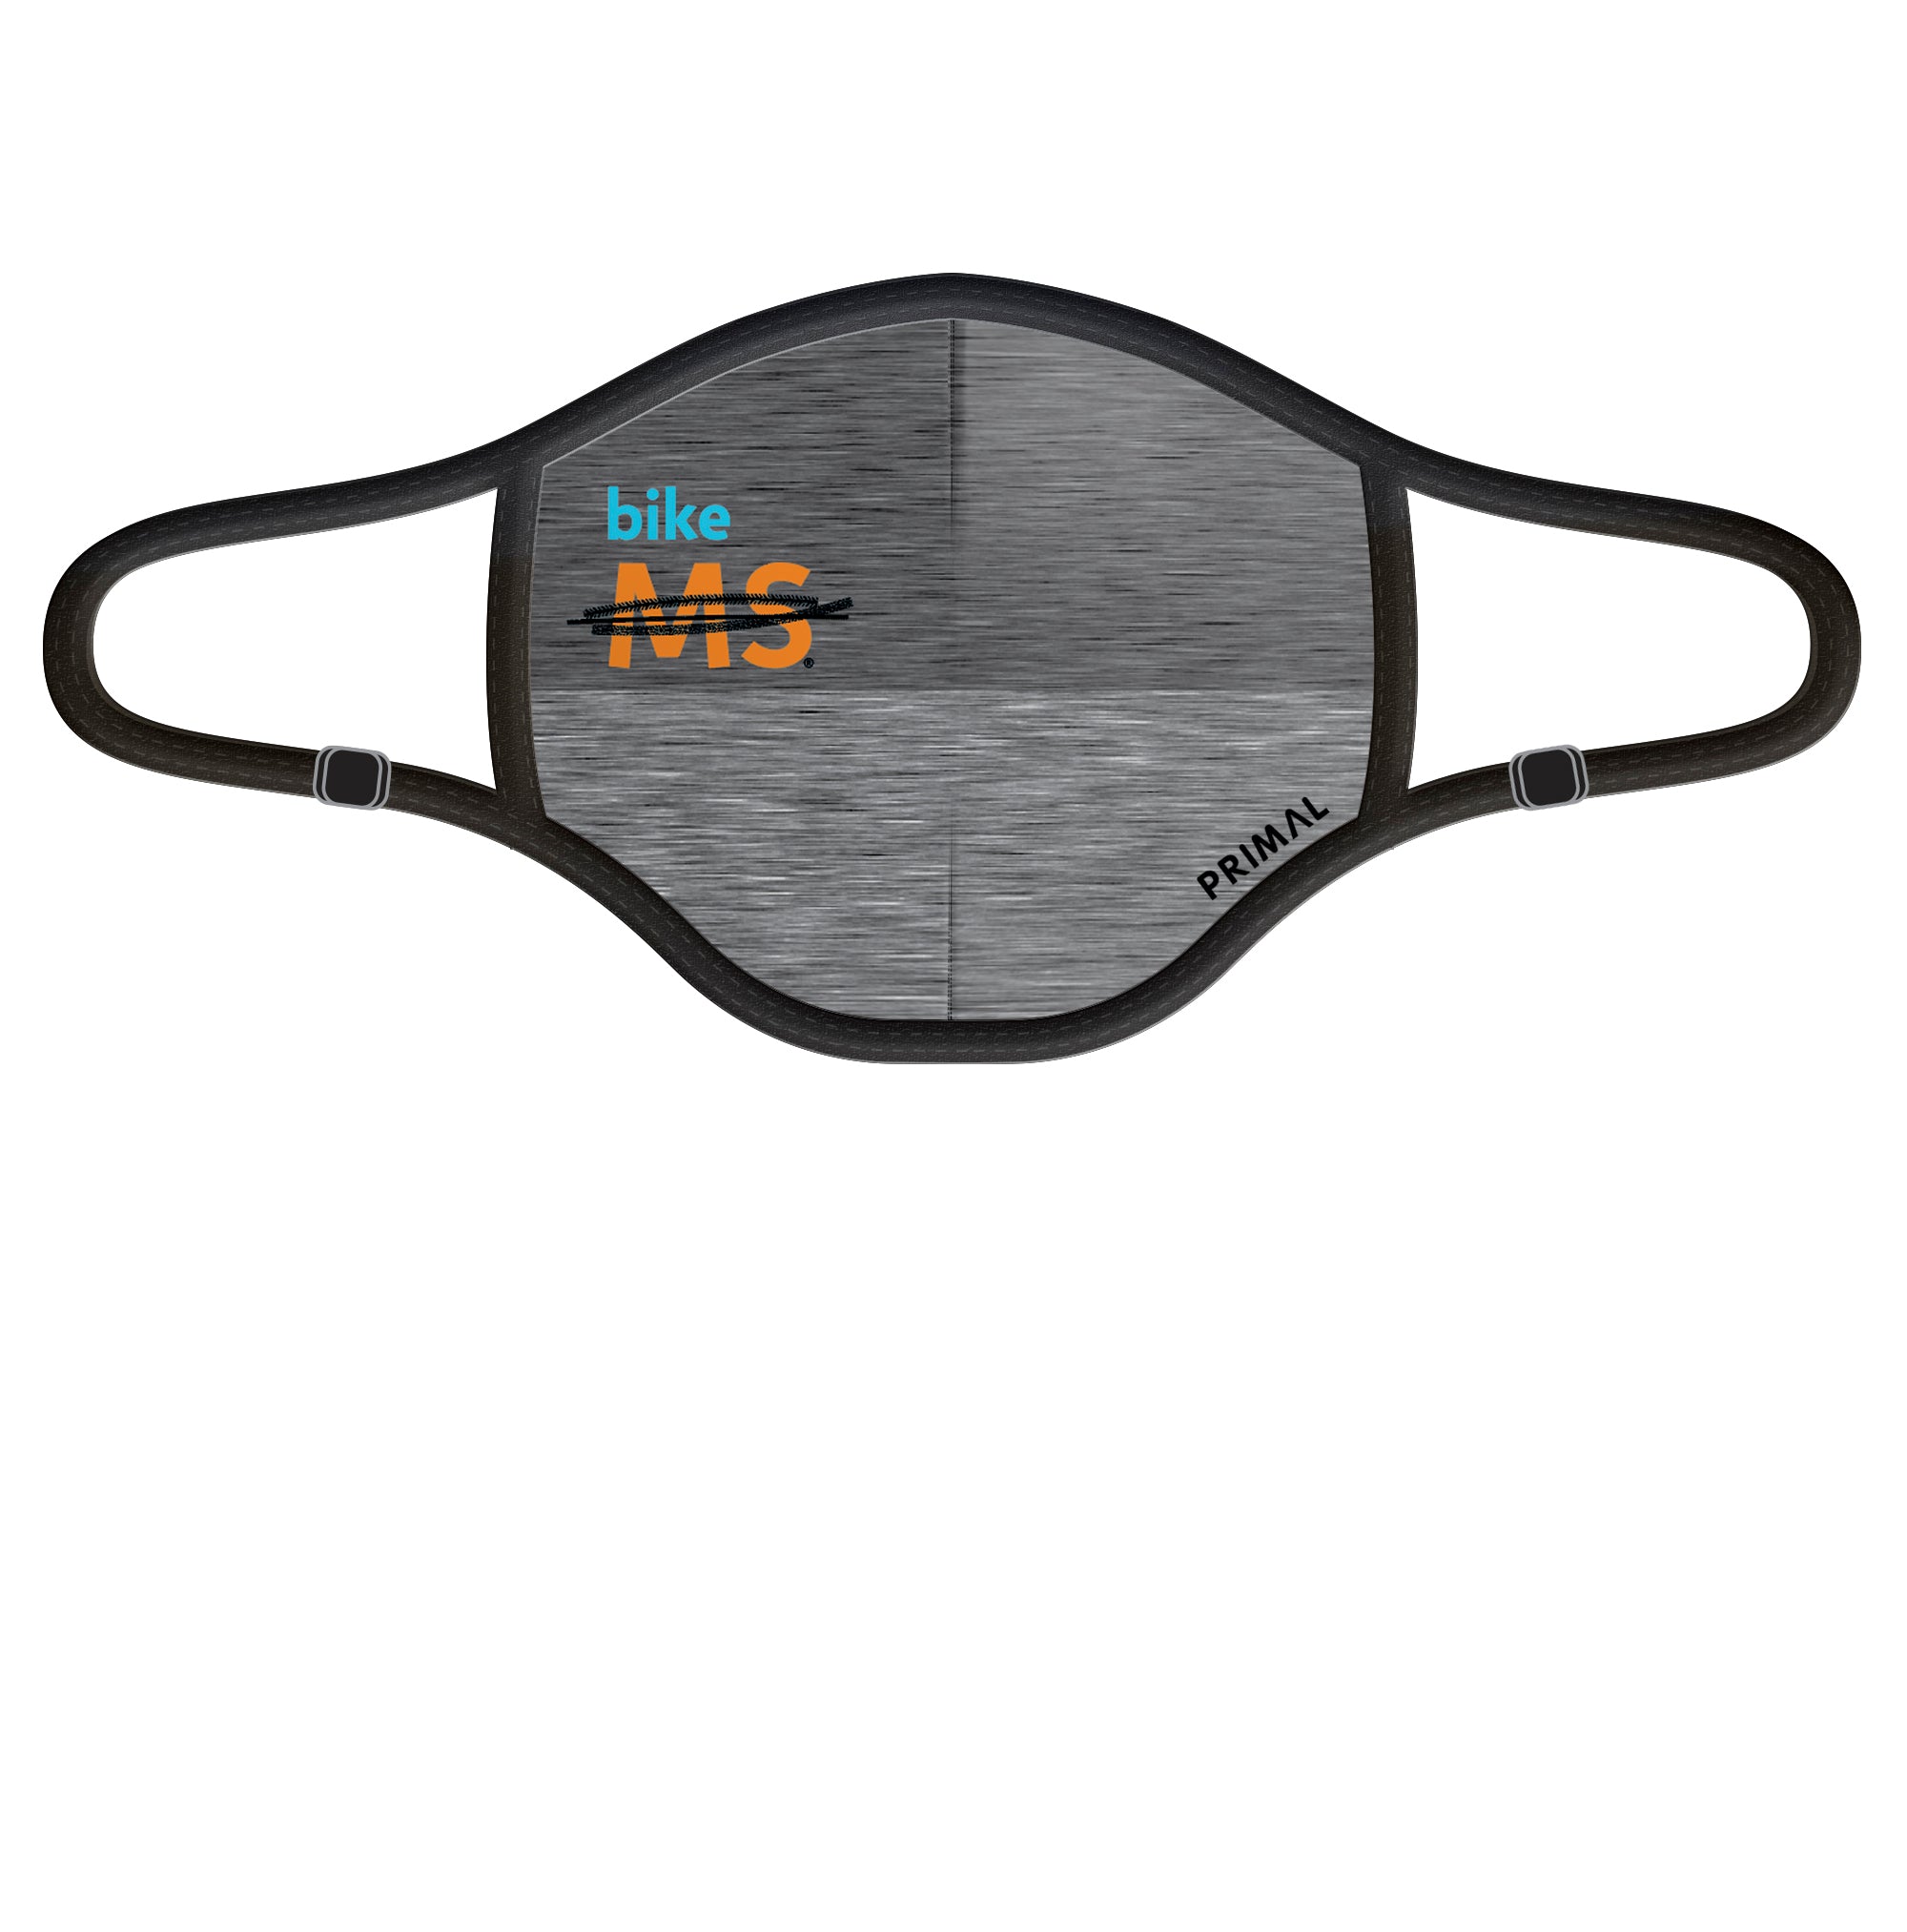 Bike MS Grey Face Mask 2.0 Filter Frame Primal Wear